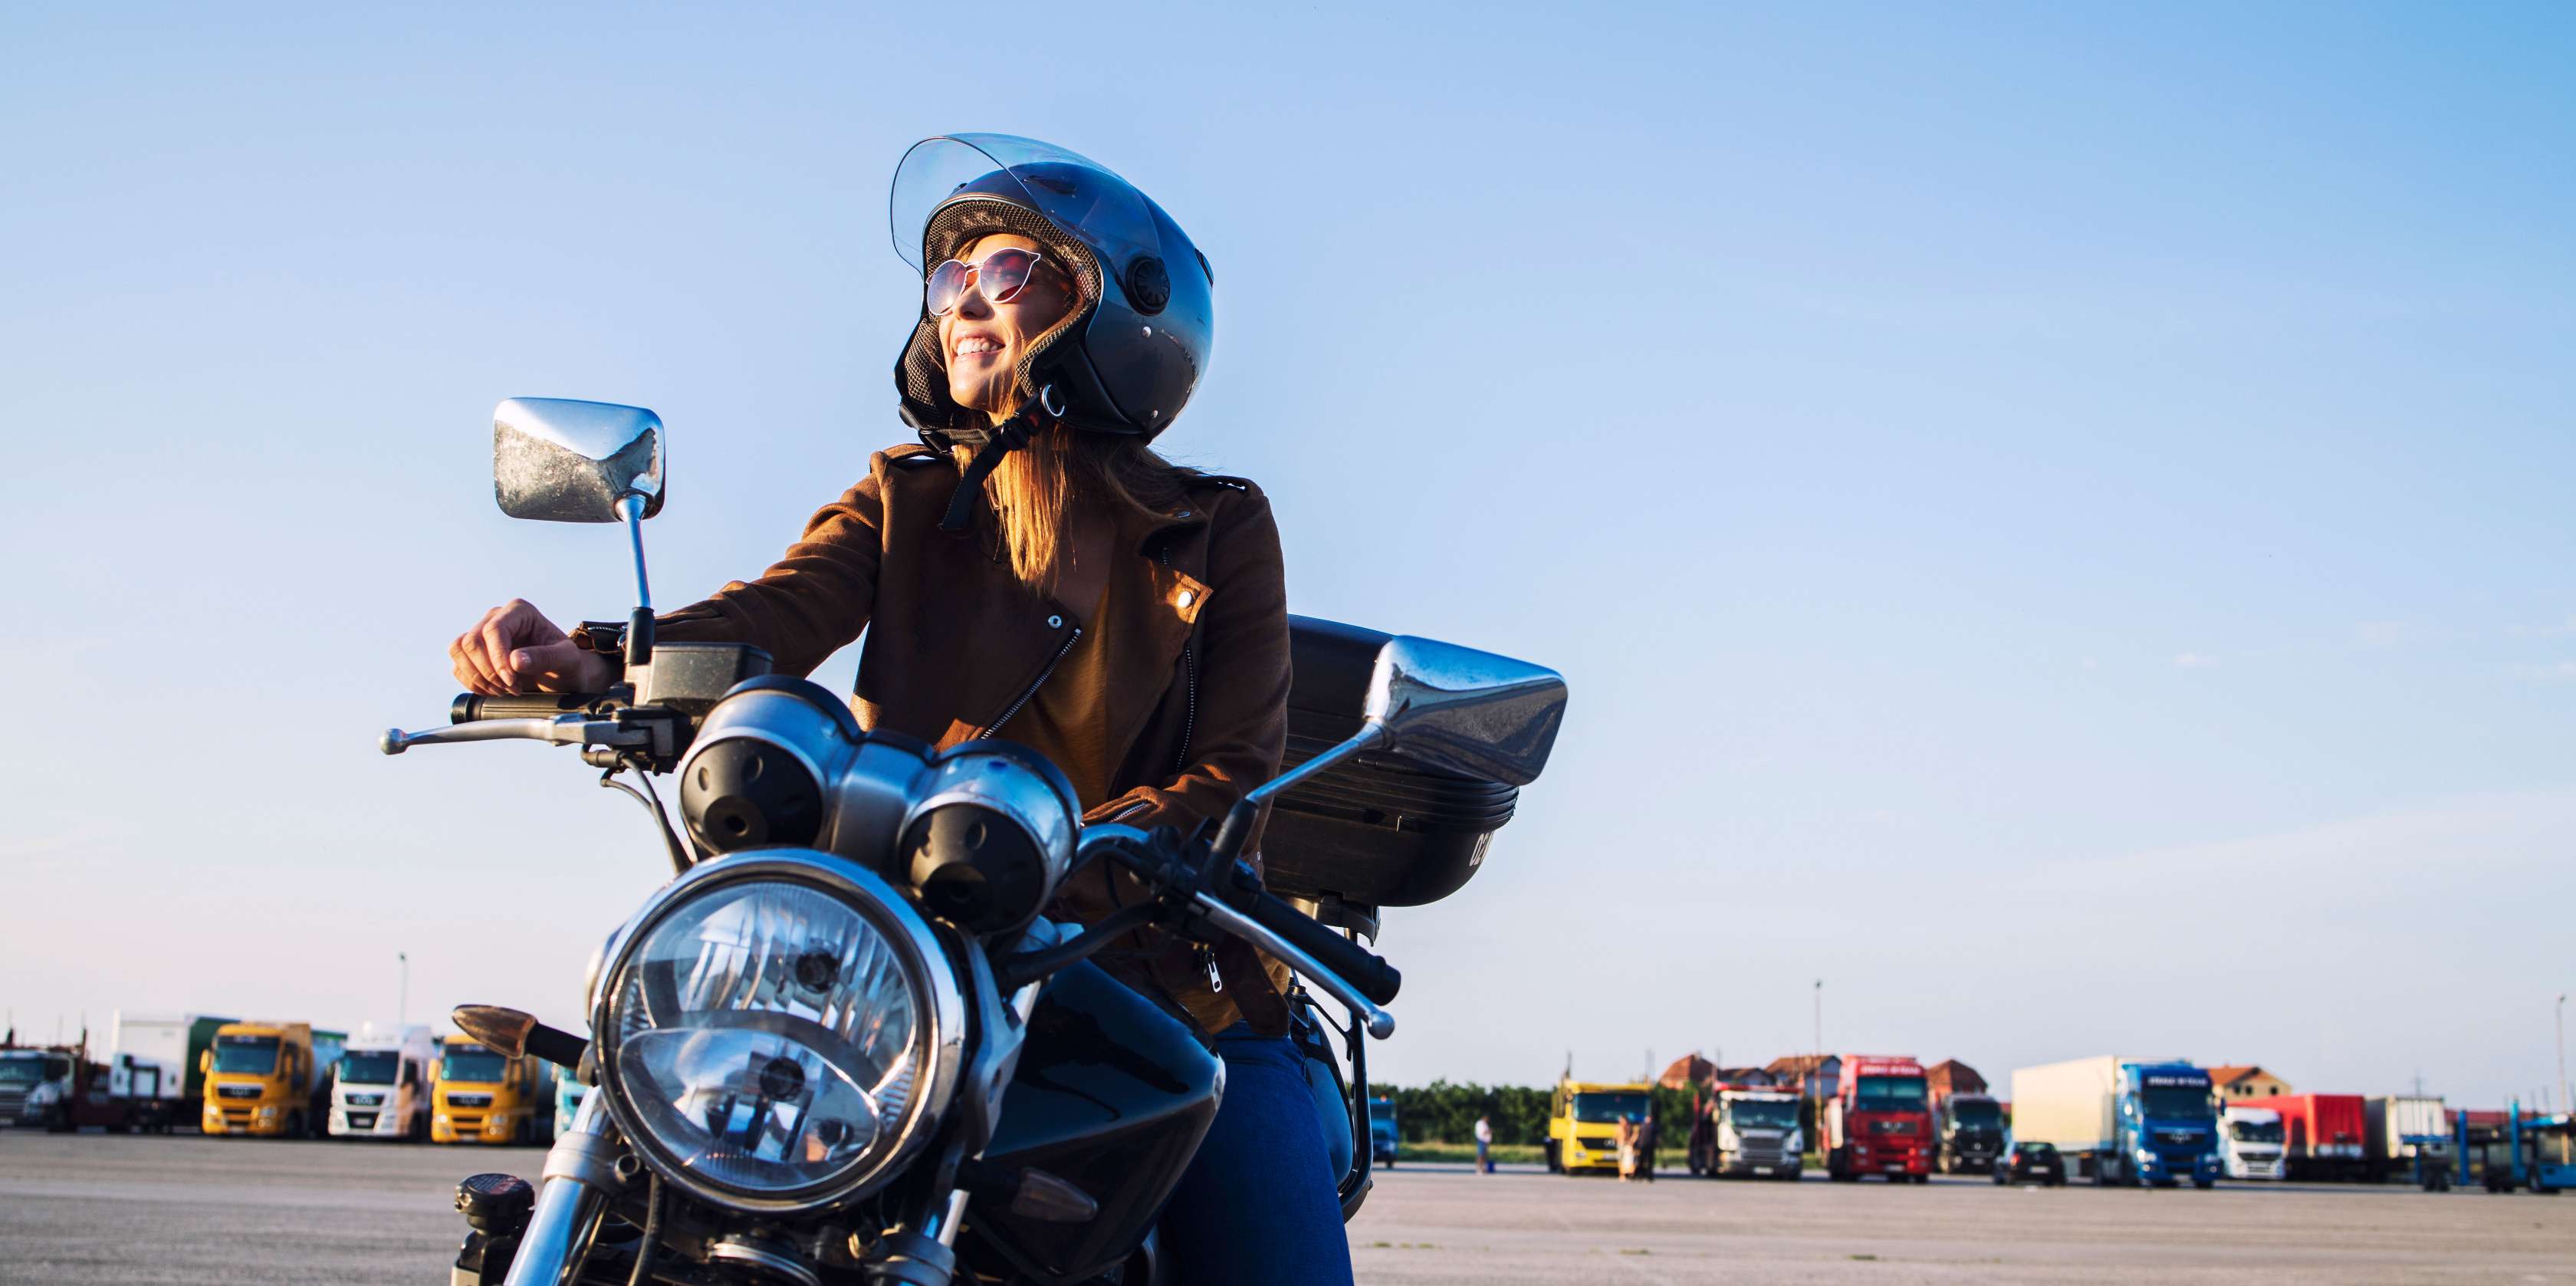 Kfz-Steuer Motorrad: Frau mit Lederjacke sitzt auf einem Motorrad auf einem Parkplatz in der Sonne